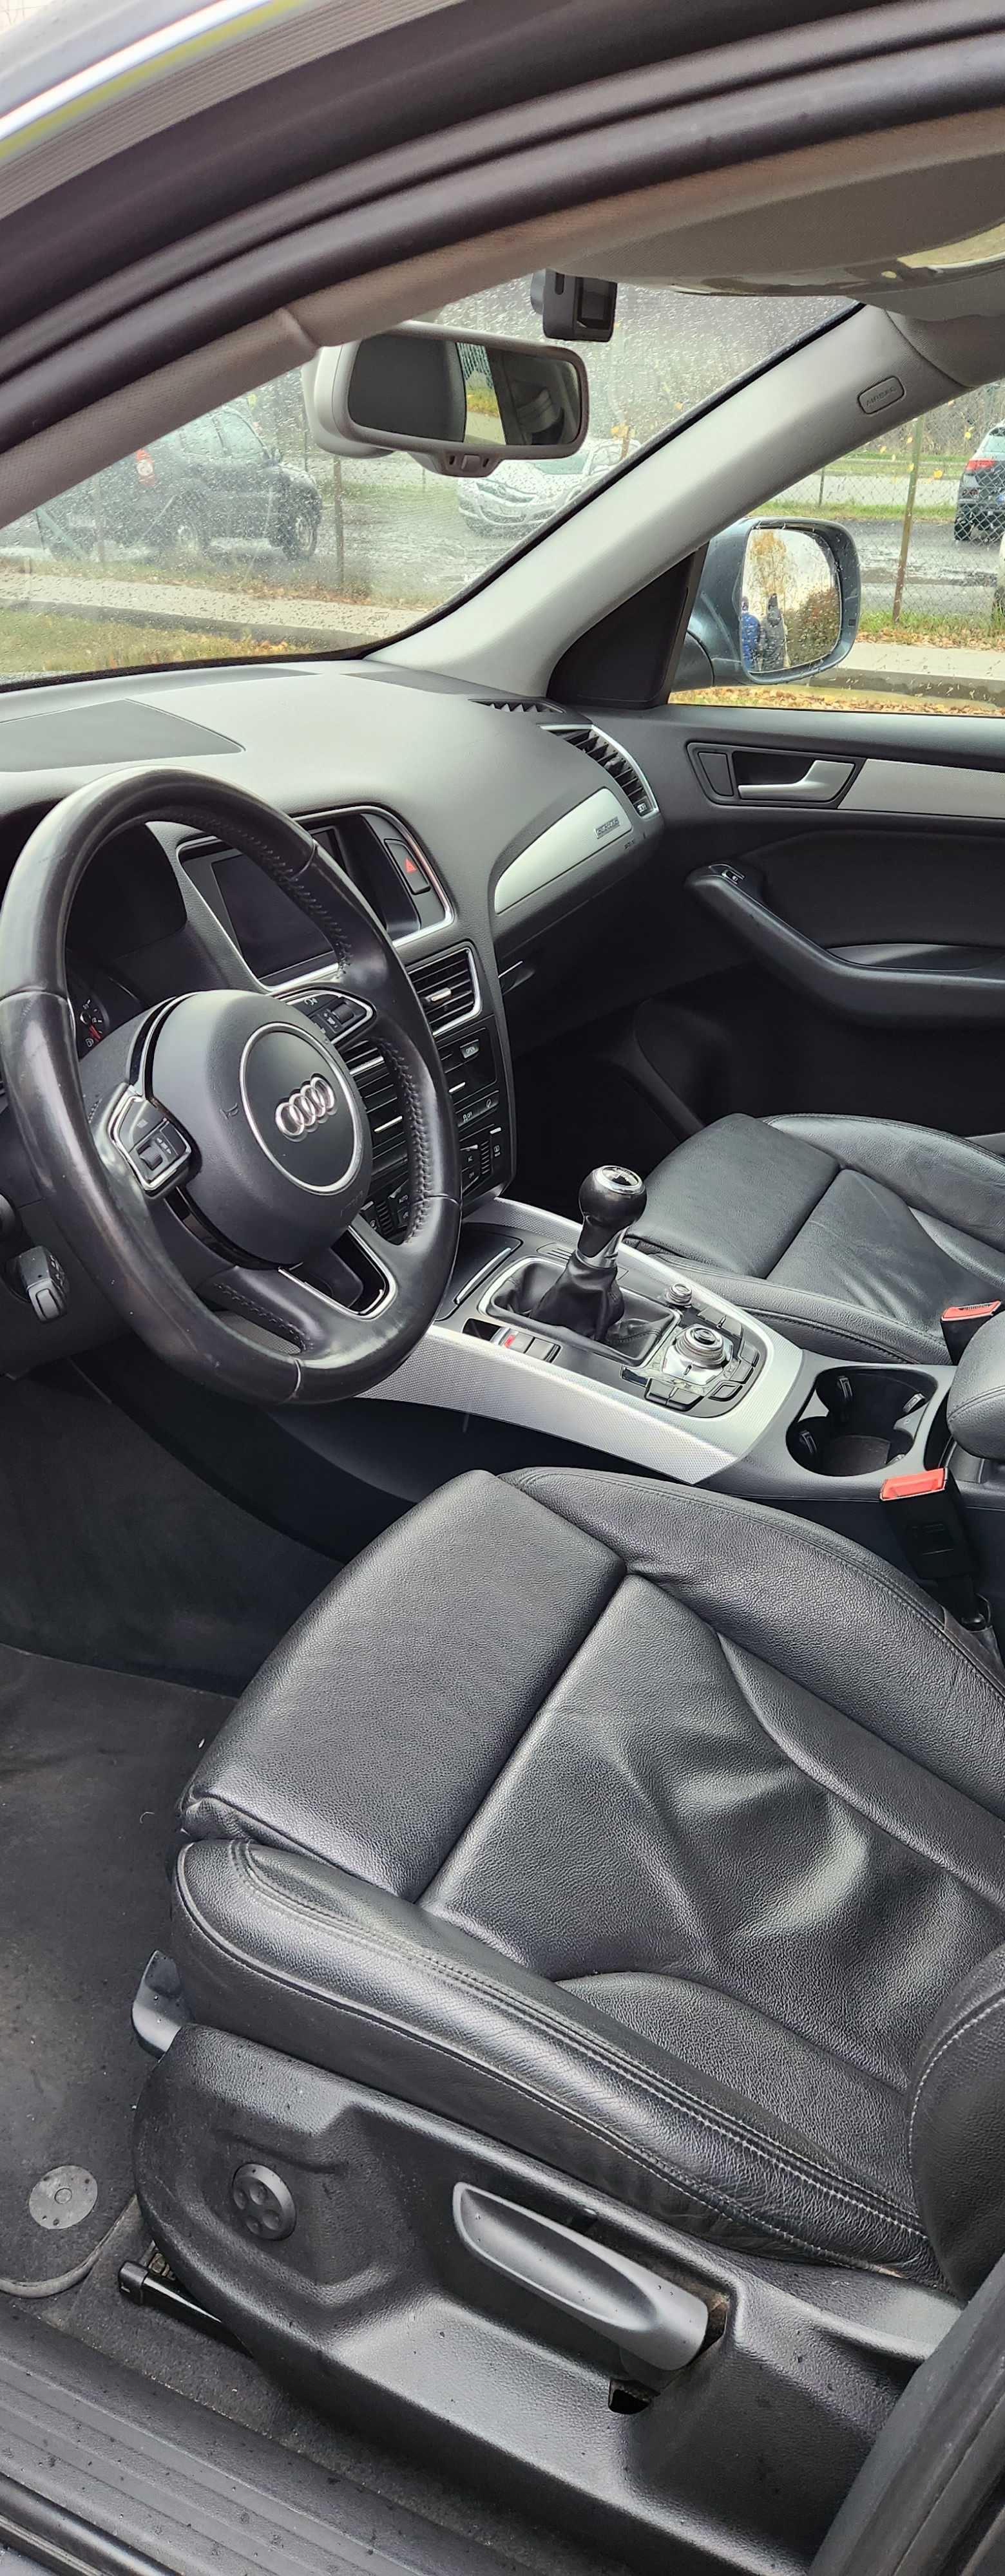 Продам Audi Q5, 2.0tdi